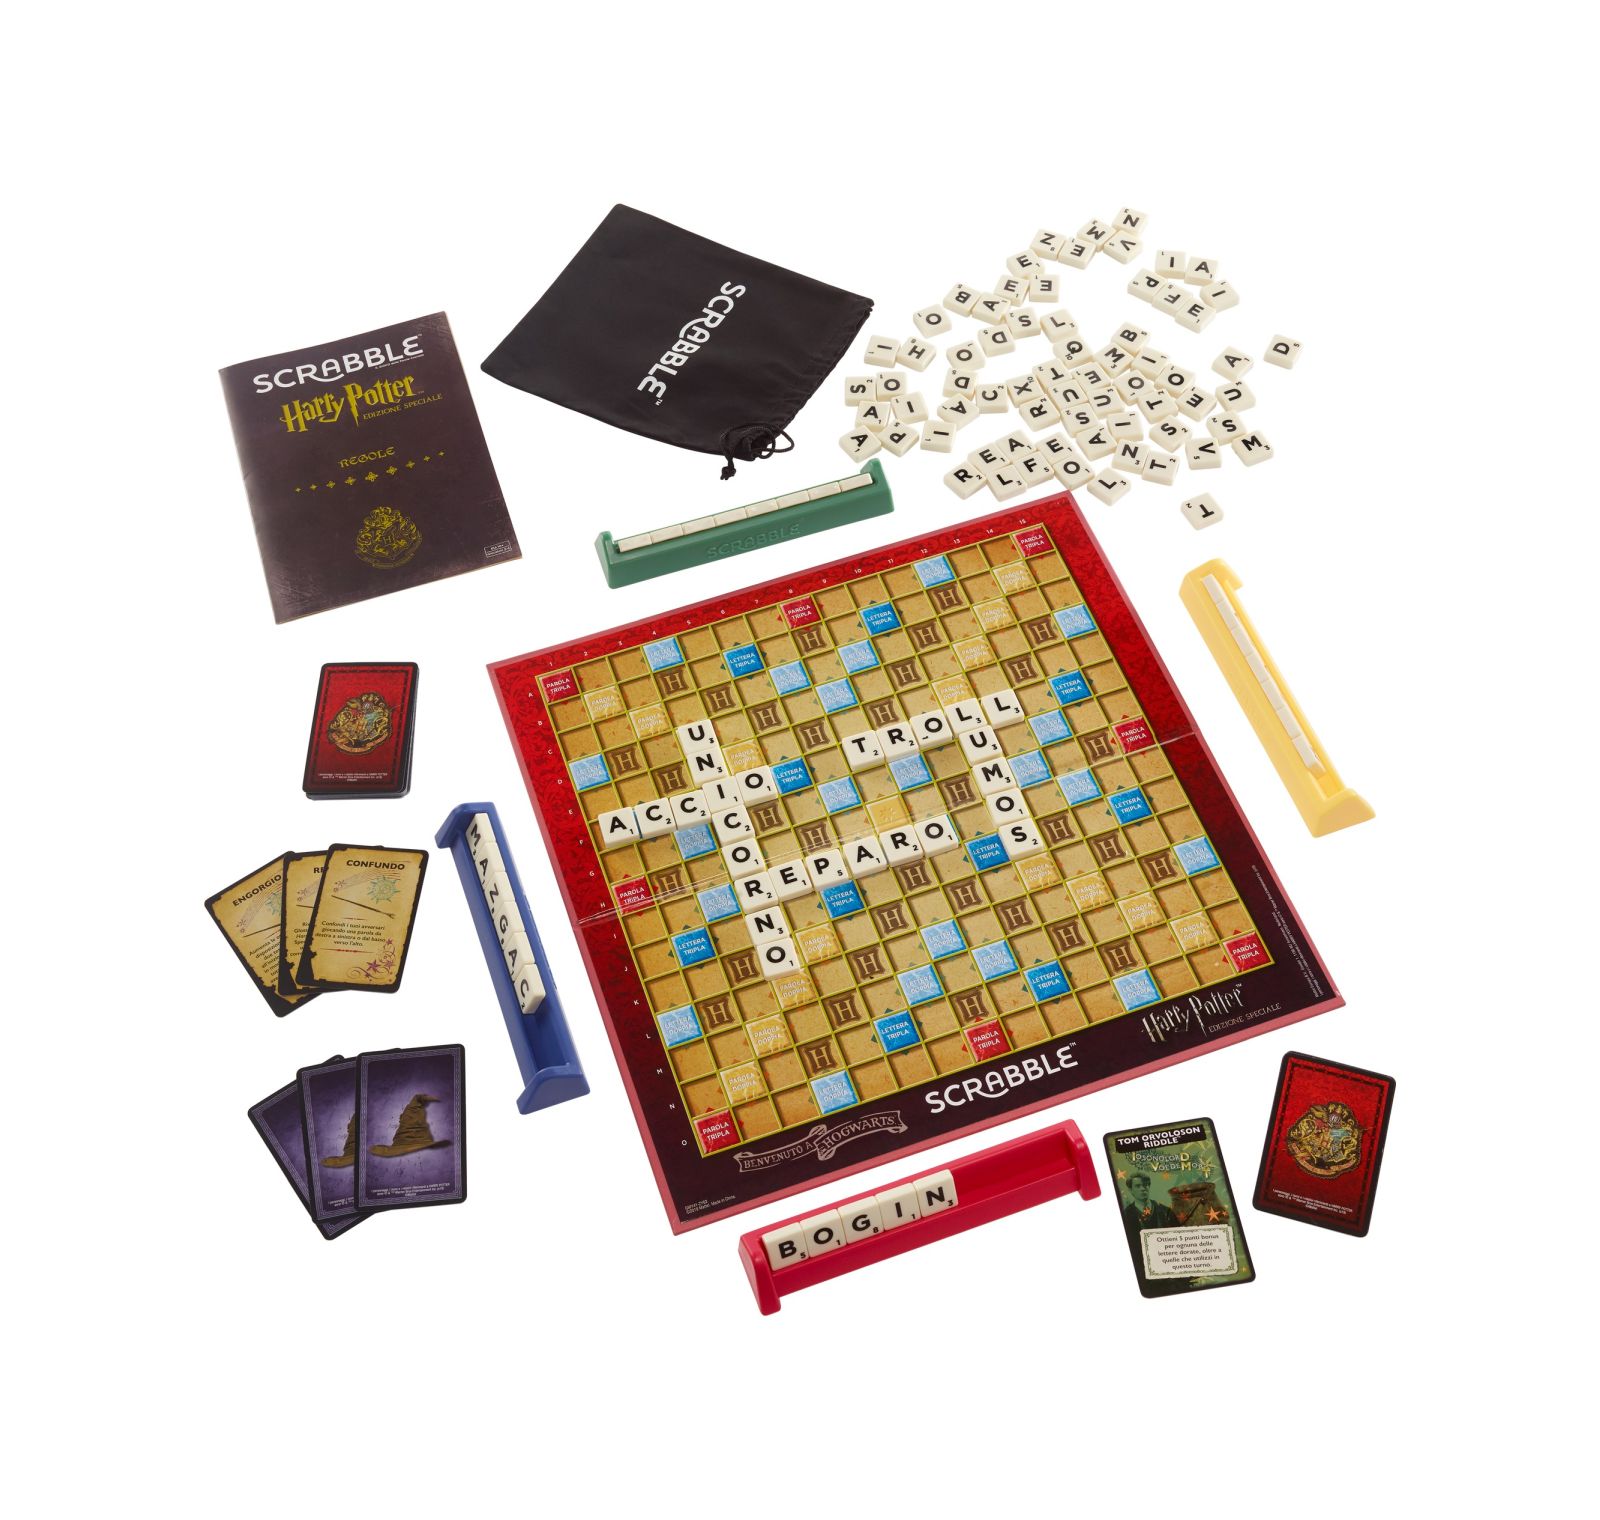 Scrabble edizione speciale harry potter, gioco da tavola delle parole crociate - Harry Potter